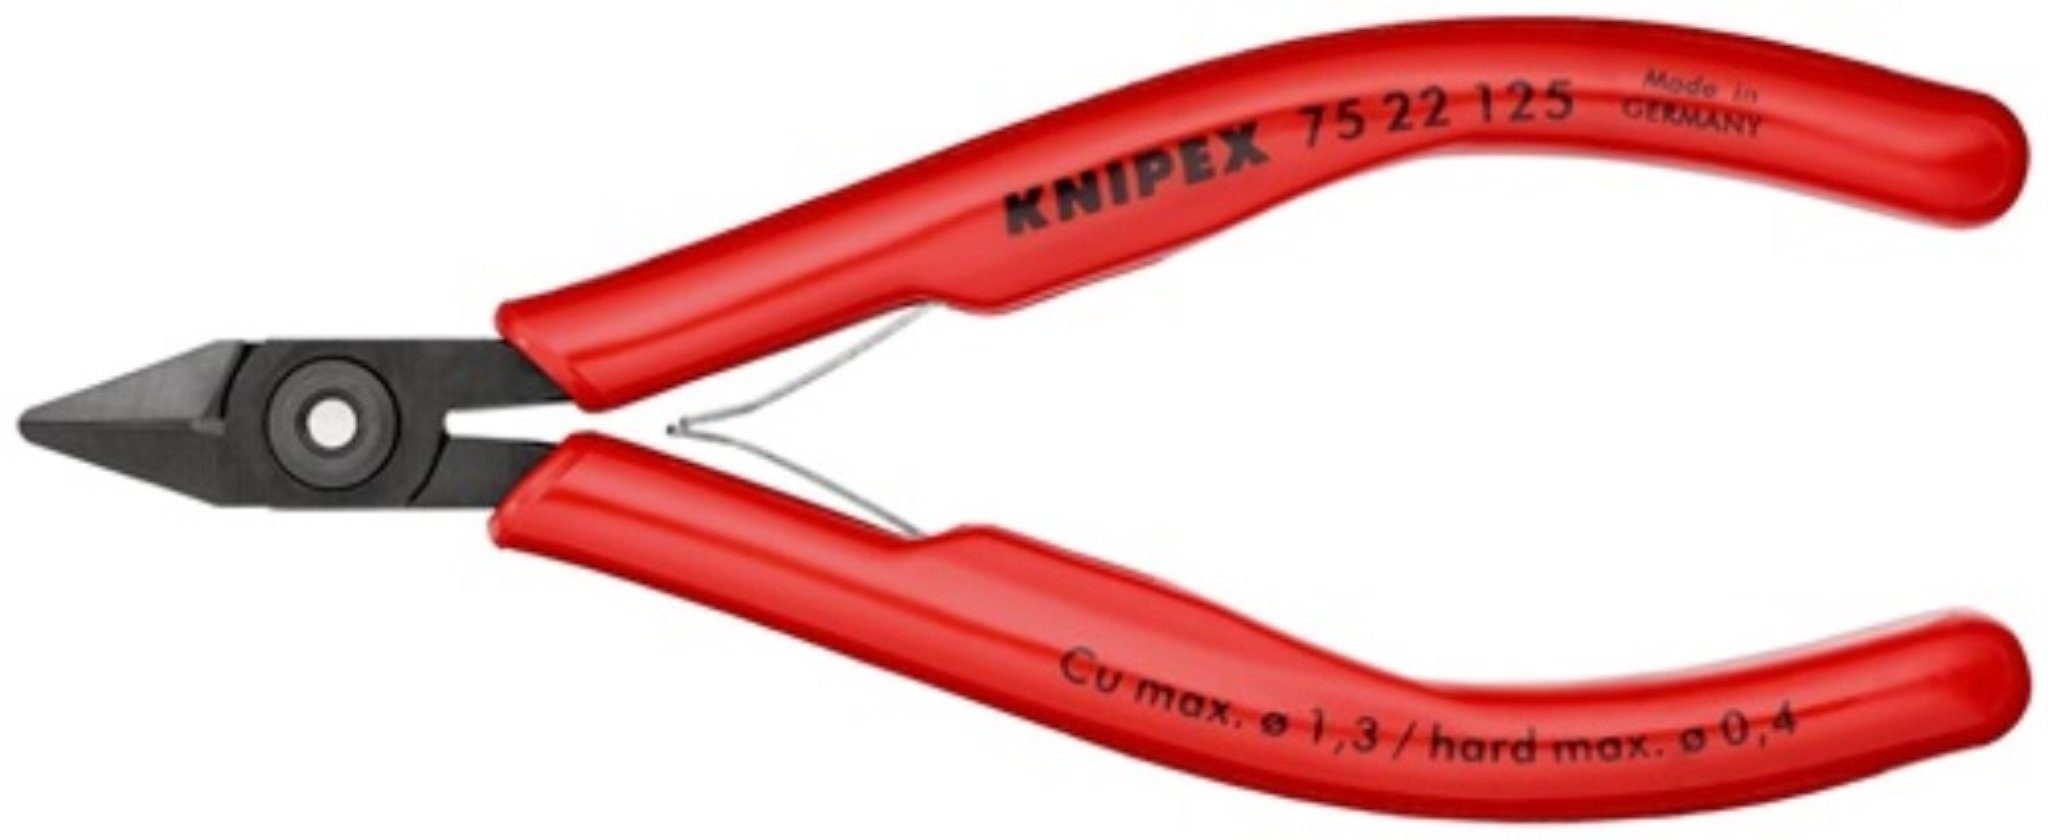 2 ja,kl.KNIPEX Knipex für Elektronik-Seitenschneider fe Seitenschneider L.125mm Facette Form